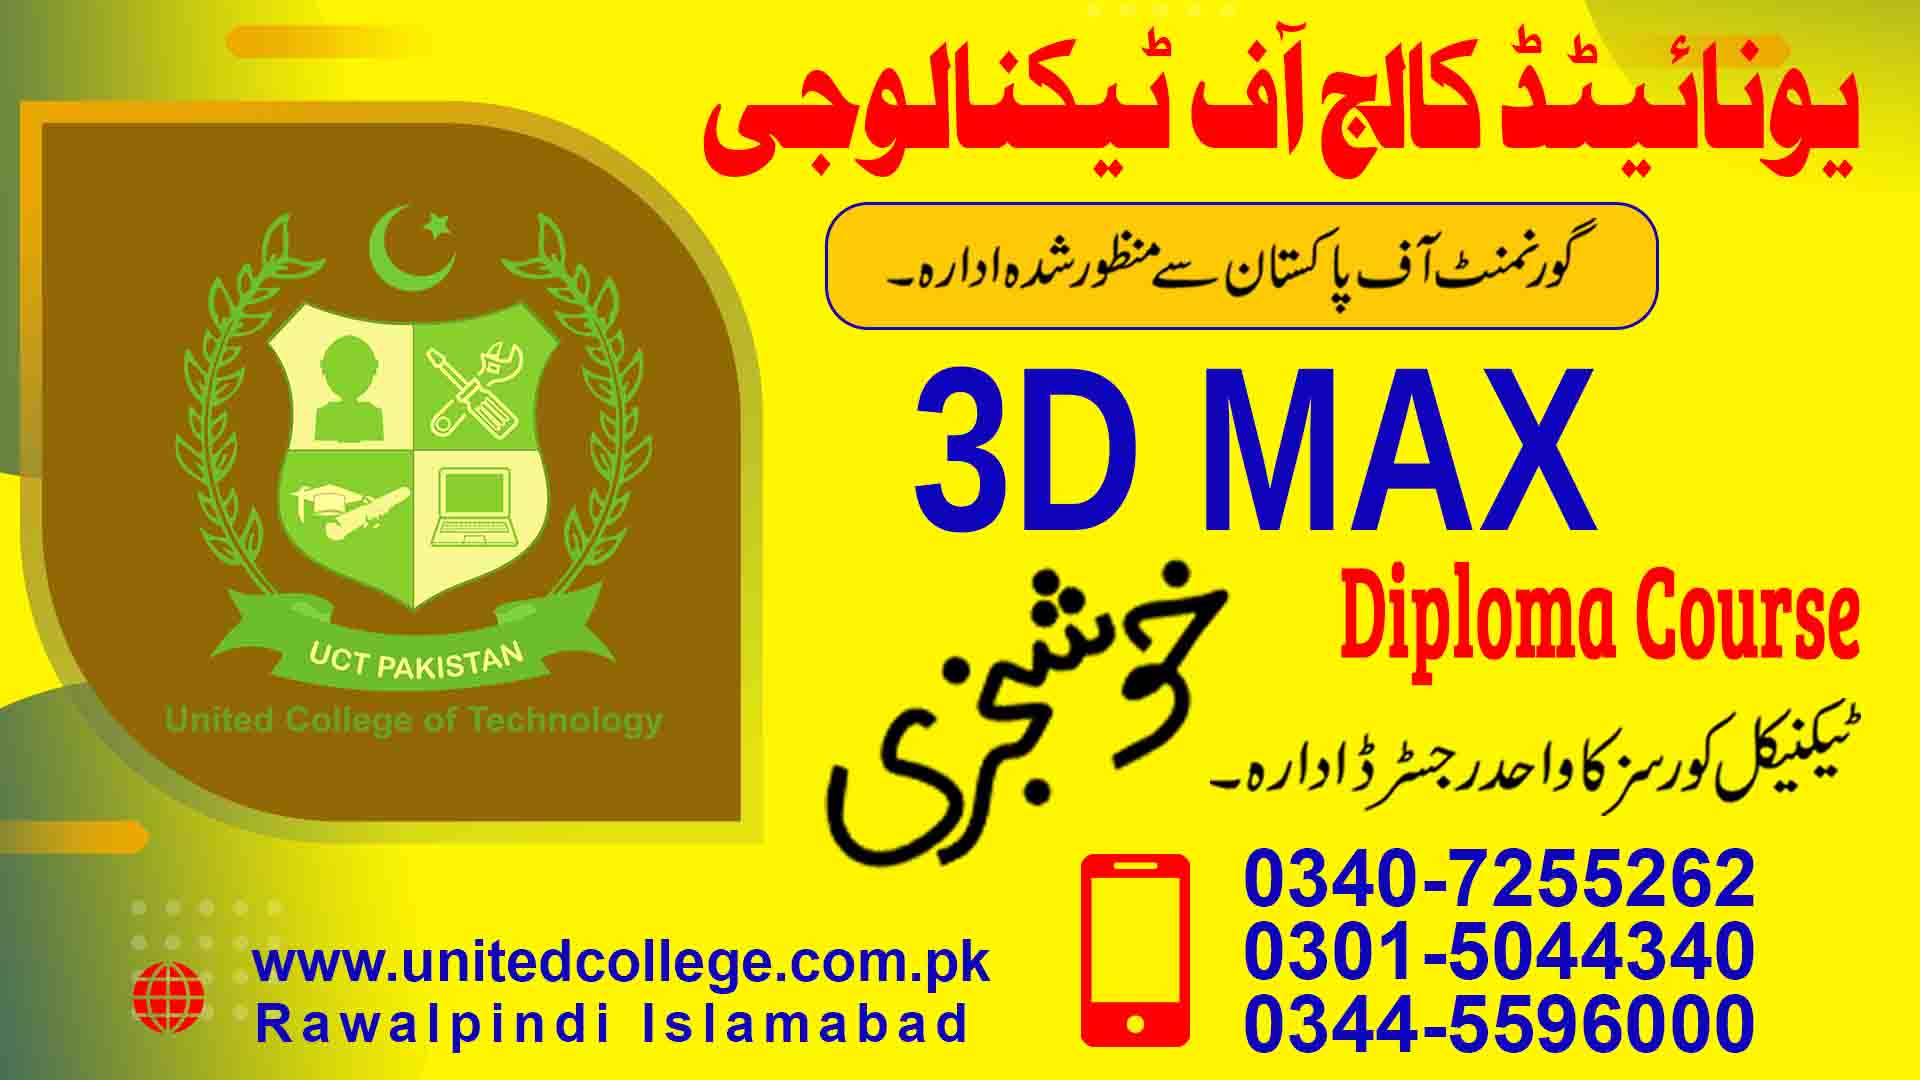 3D MAX COURSE IN RAWALPINDI ISLAMABAD PAKISTAN